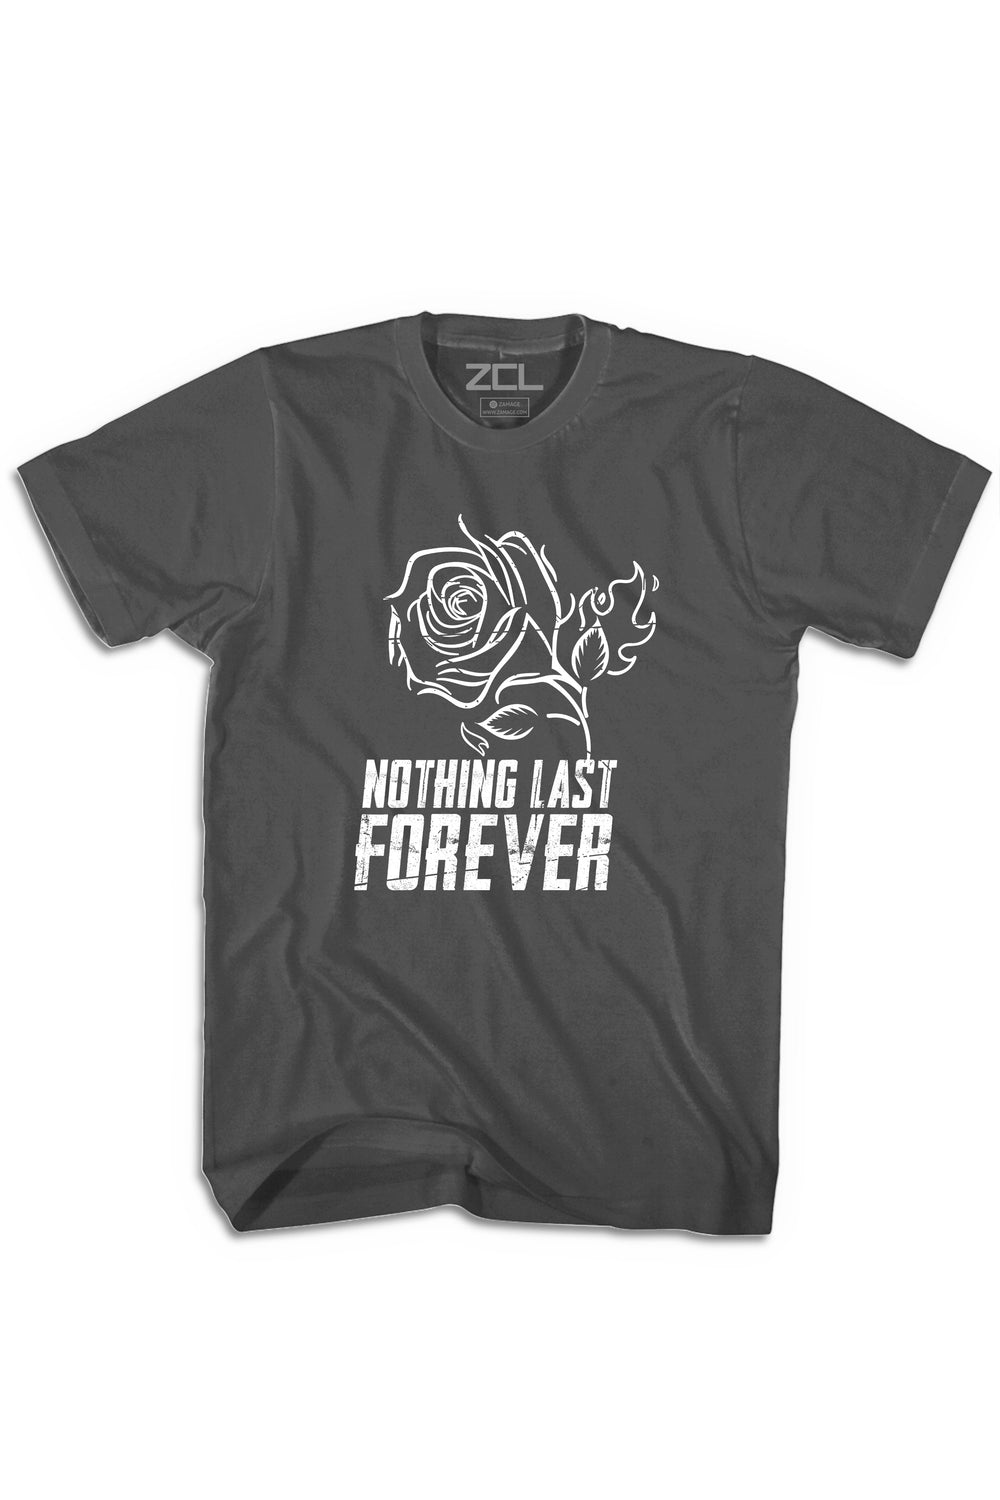 Nothing Last Forever Tee (White Logo) - Zamage